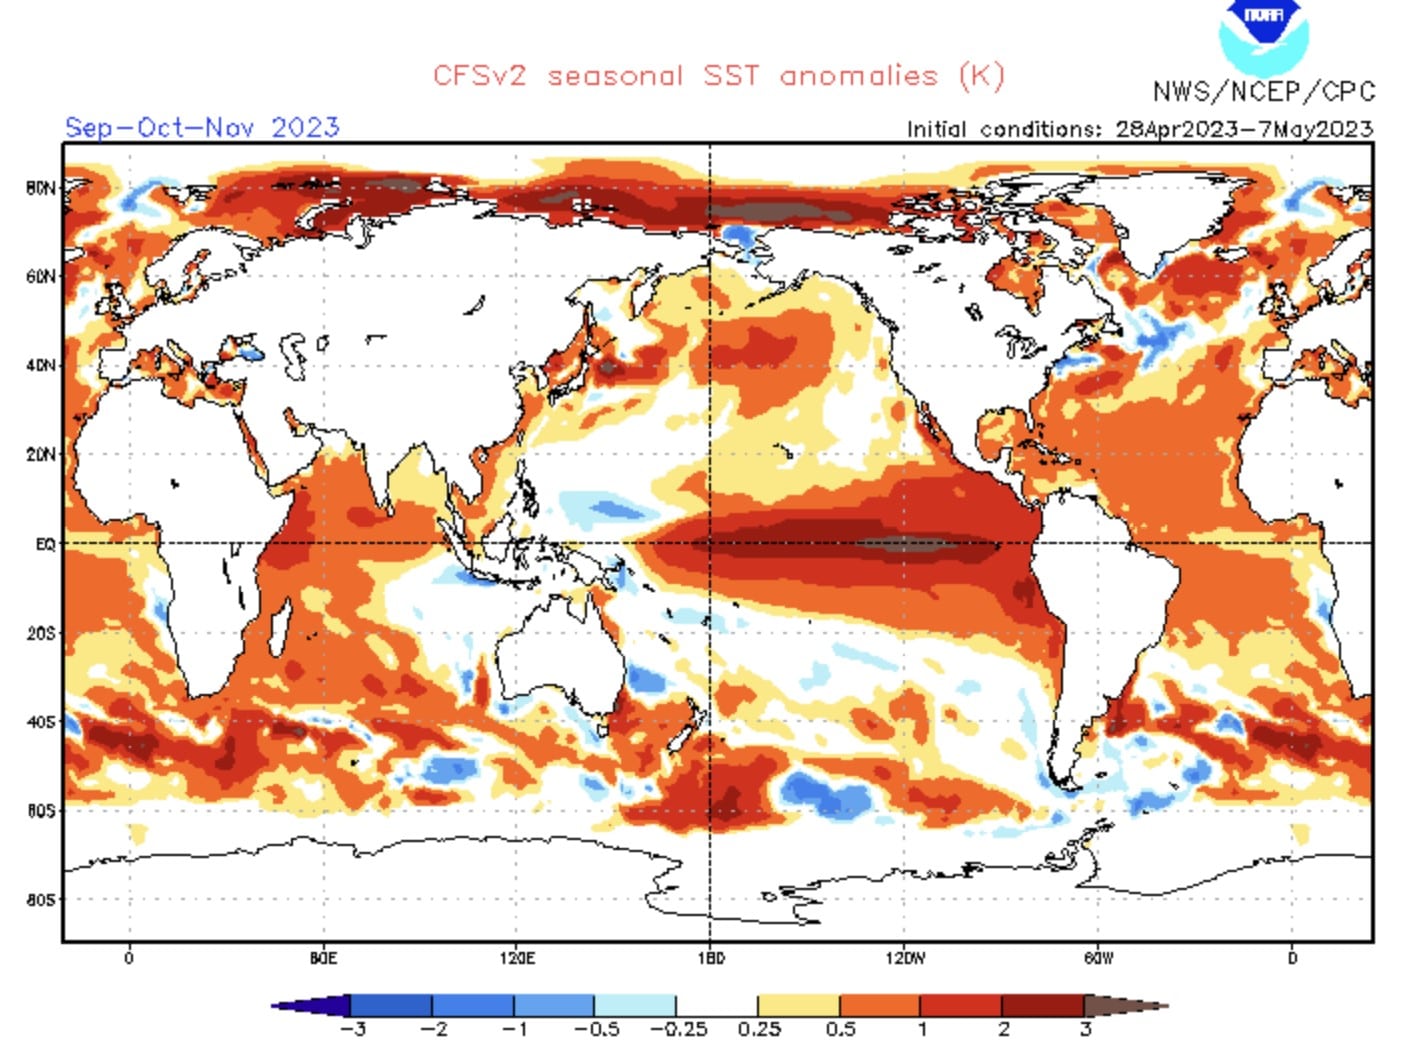 La tendance pour les prochains mois se confirme. El Niño sera intense dans le Pacifique et la menace d'un super El Niño progresse.